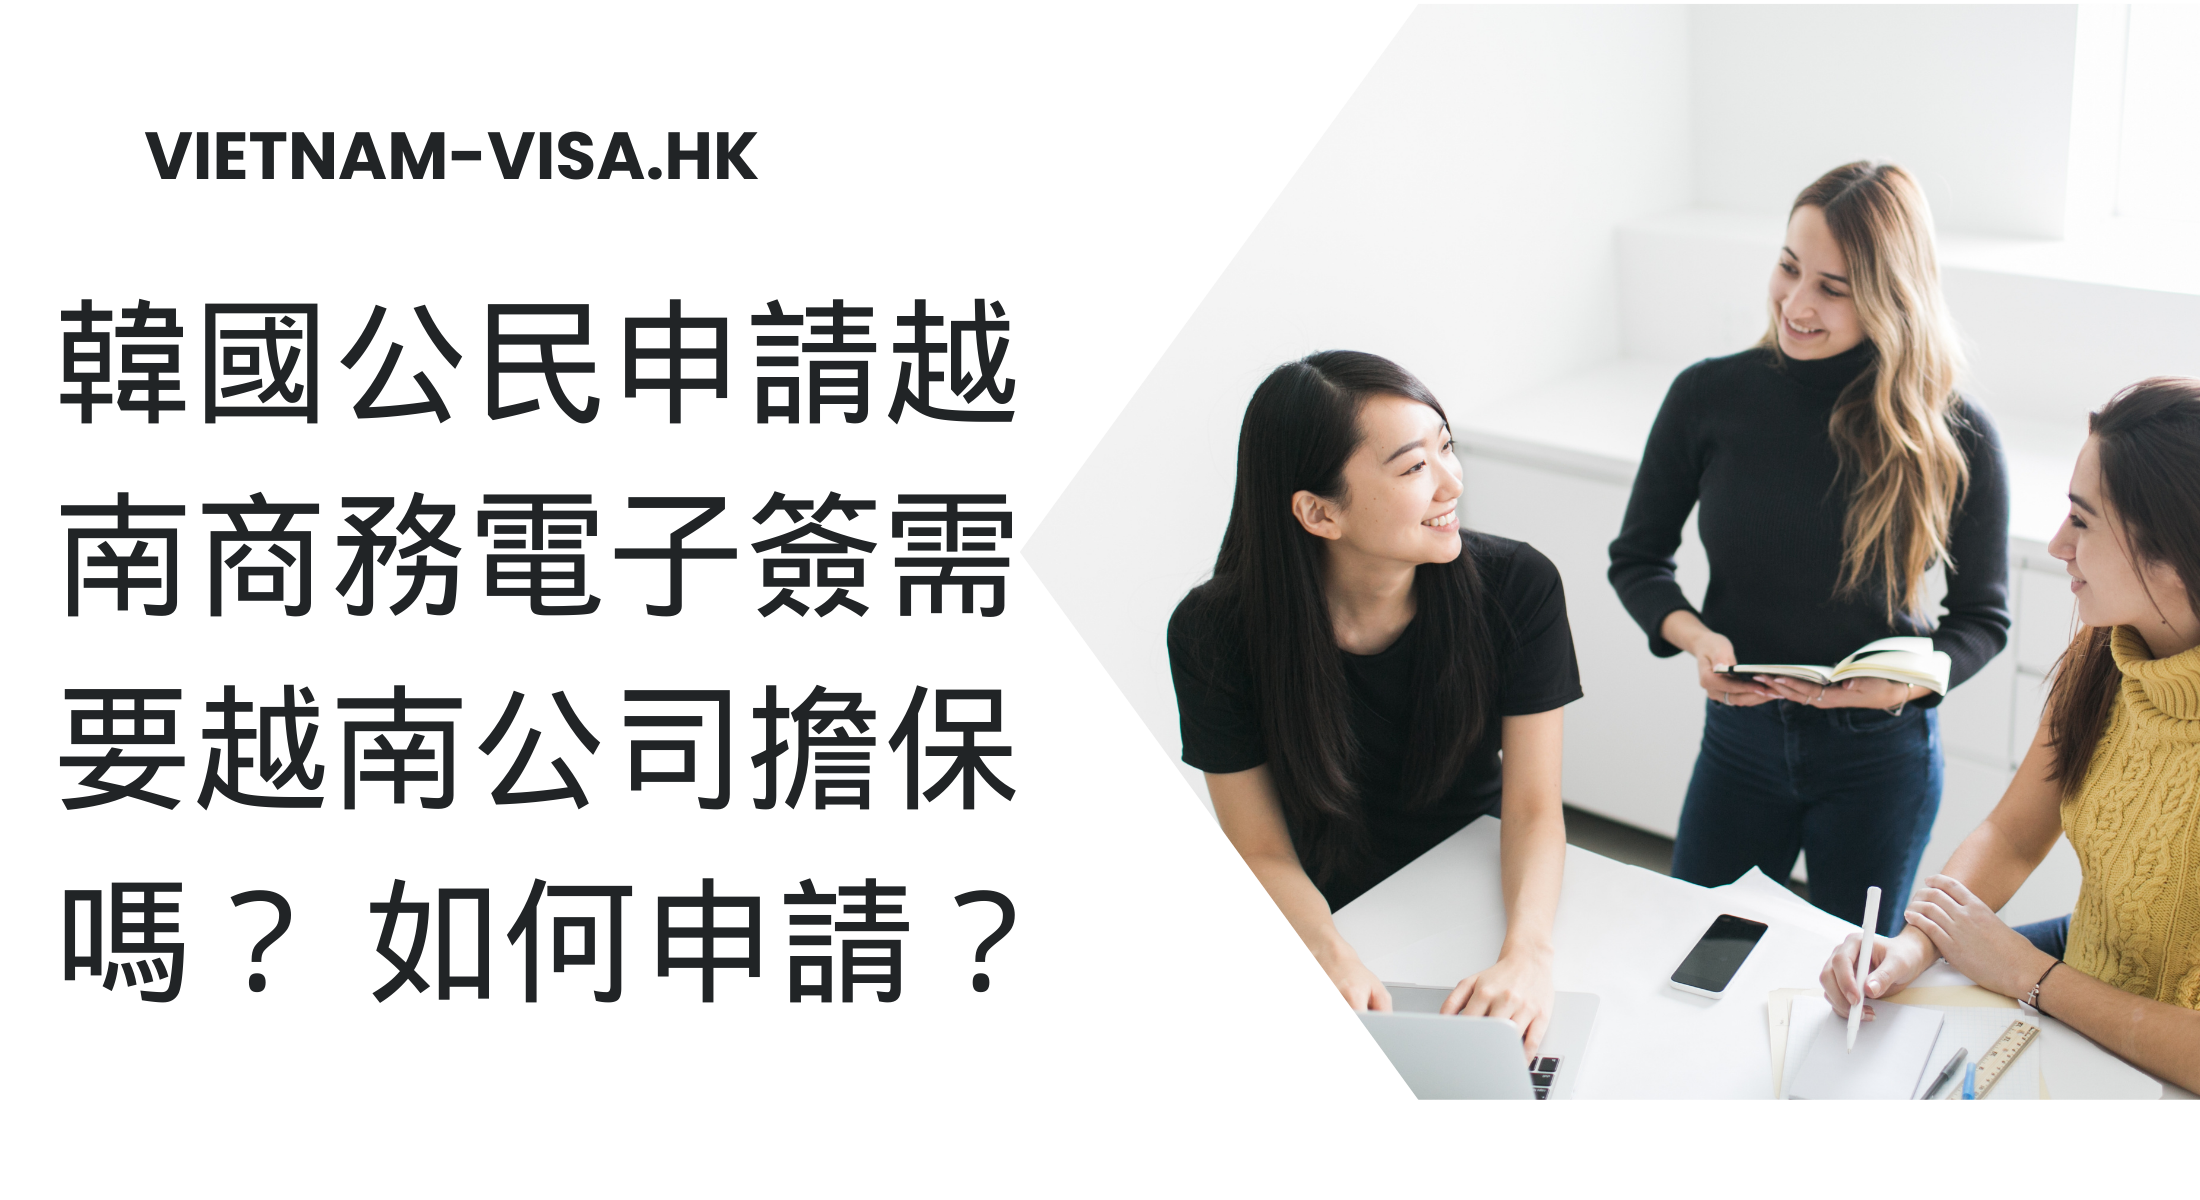 韓國公民申請越南商務電子簽需要越南公司擔保嗎？ 如何申請？